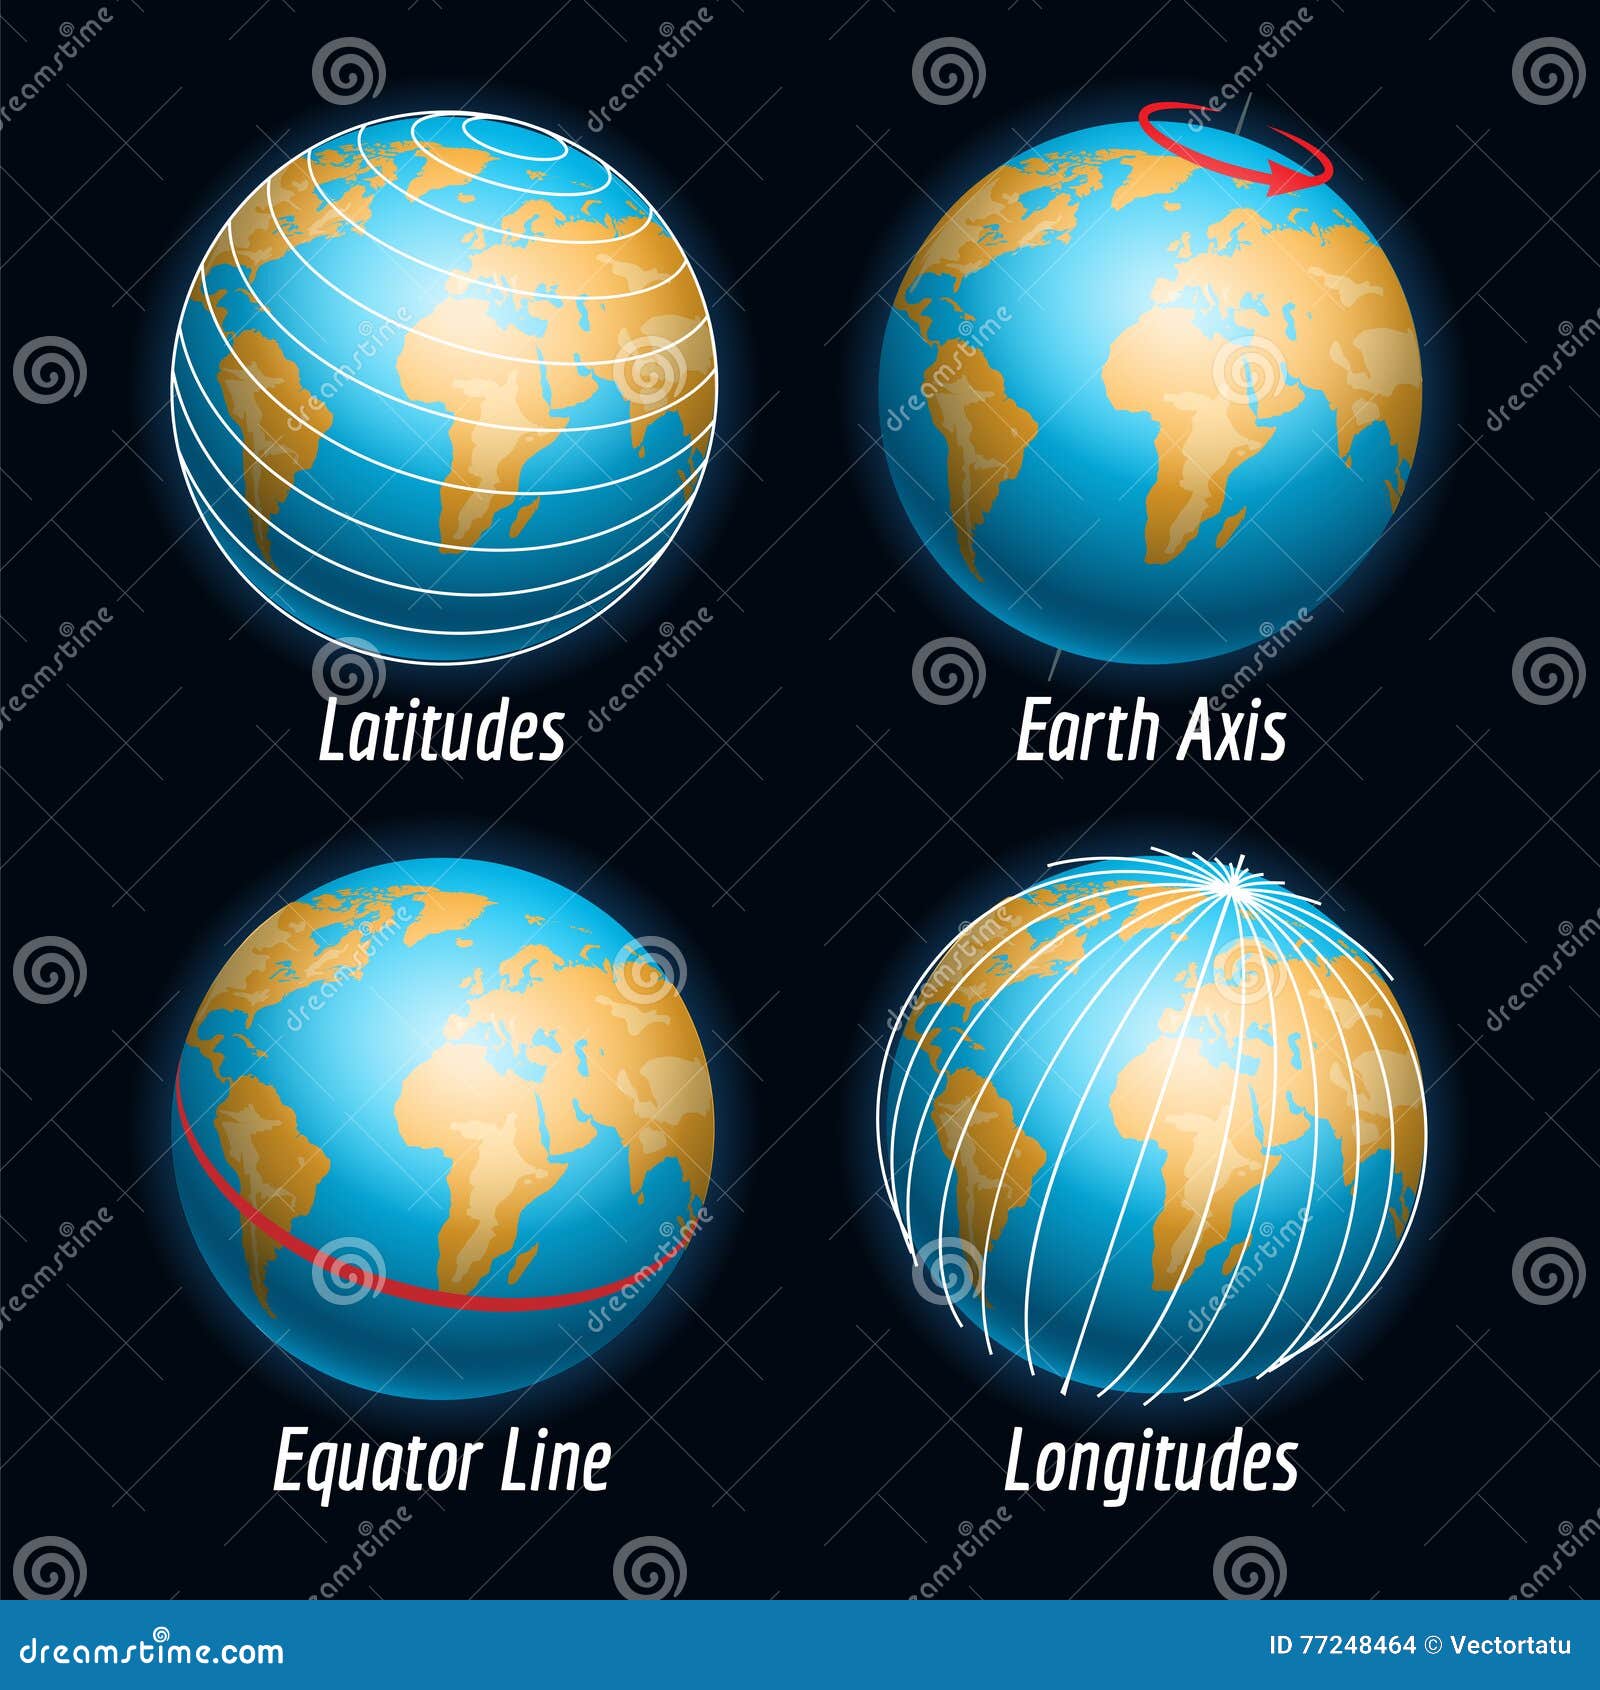 Iconos De La Tierra Con Las Líneas De Las Longitudes De Las Latitudes